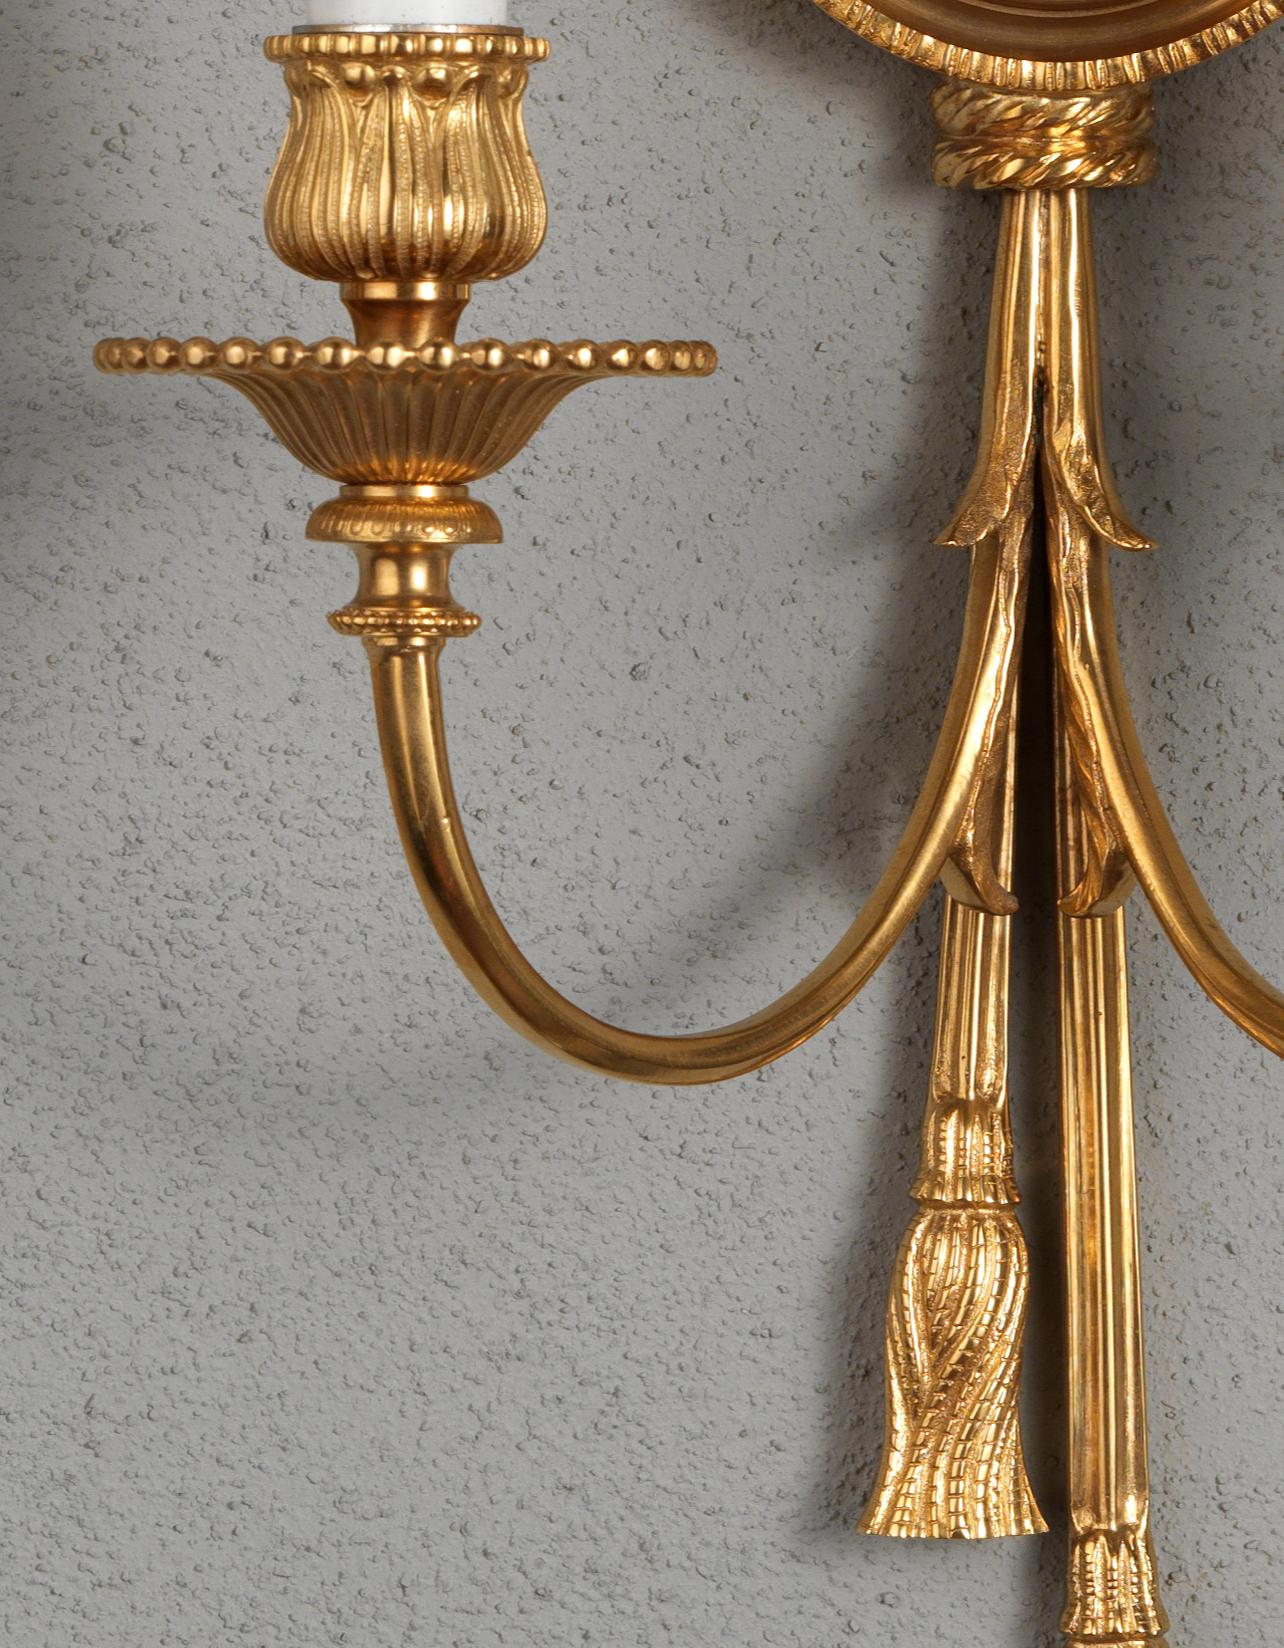 Wandleuchter aus vergoldeter Bronze und Emaille im Louis XVI-Stil von Gherardo Degli Albizzi. Dieses feine Wandleuchter-Set ist vollständig aus vergoldeter Bronze gefertigt und mit typischen Elementen der Louis XVI-Periode verziert, wie dem Kopf der